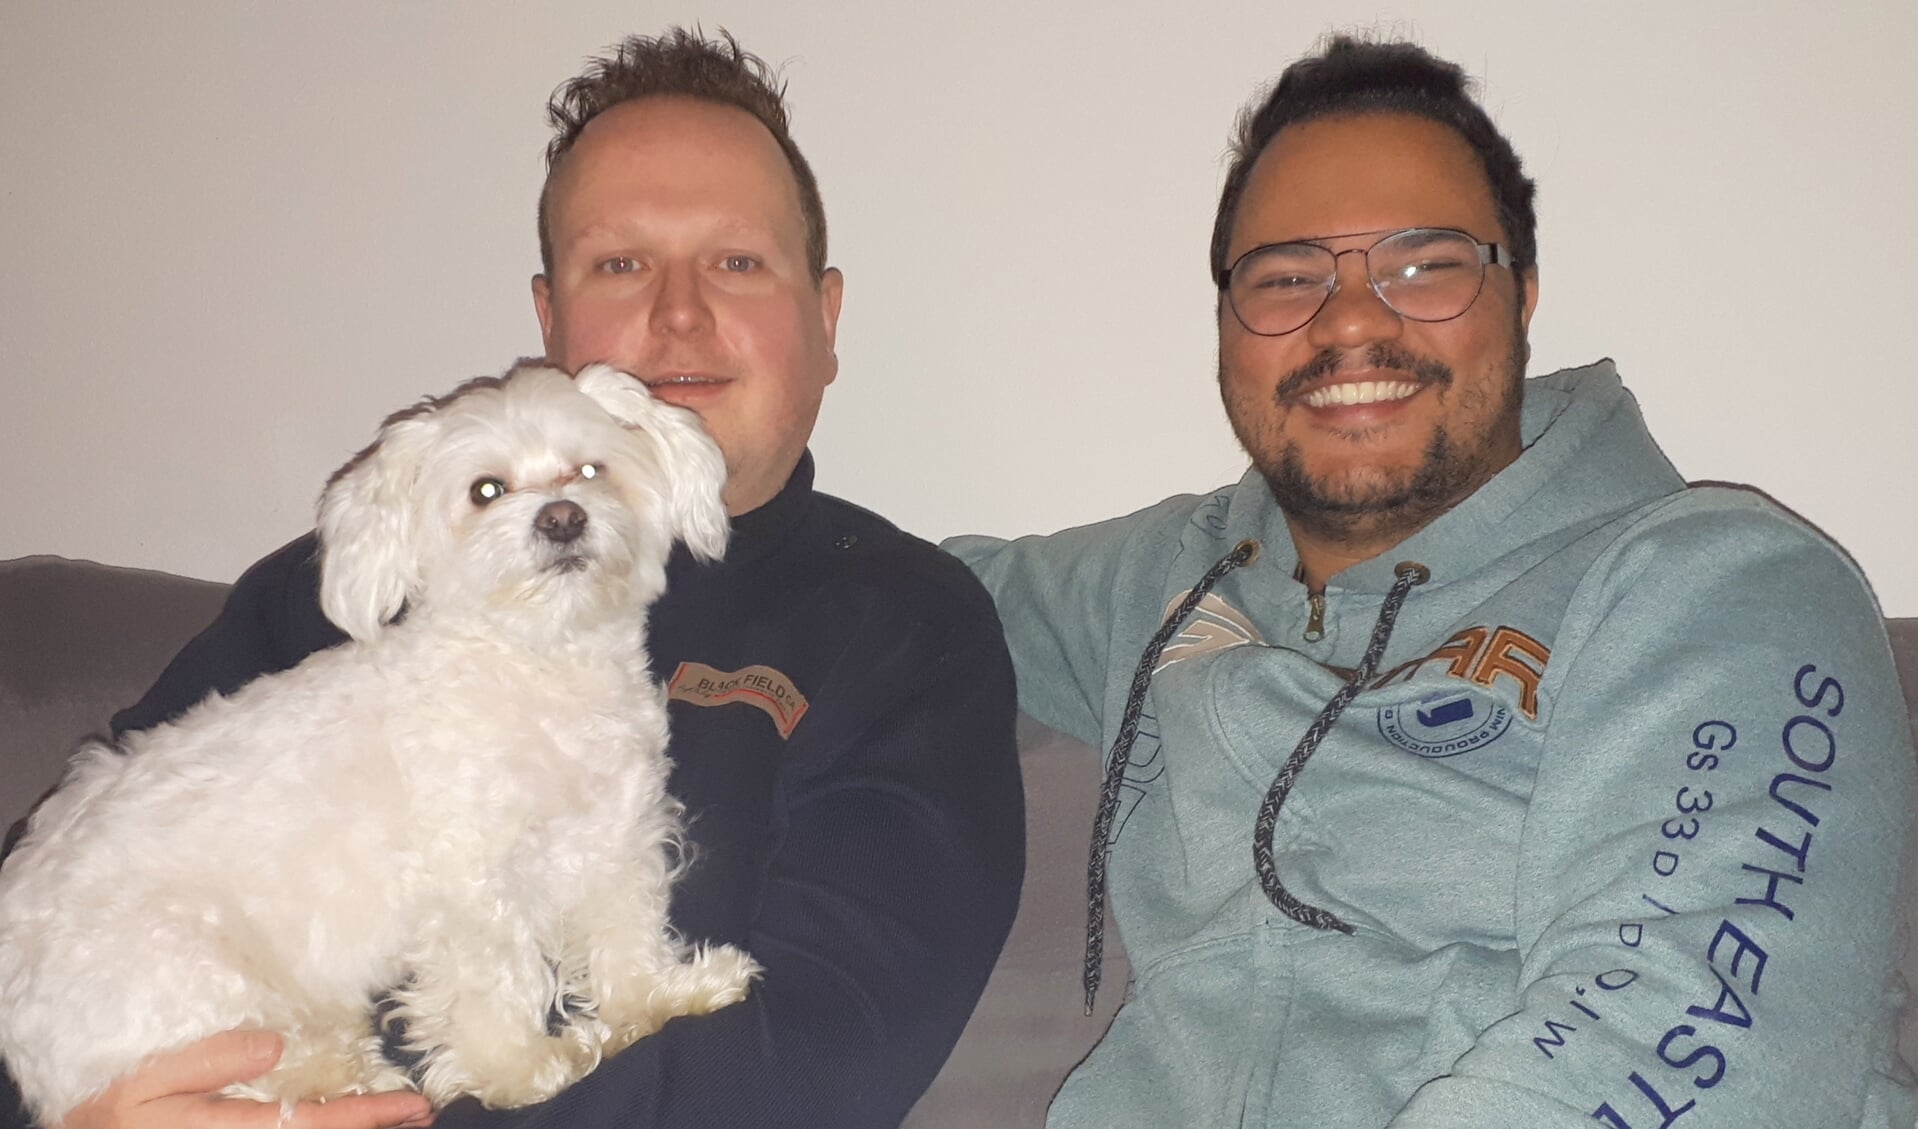 Murillo en Frank met hun hondje Boby.